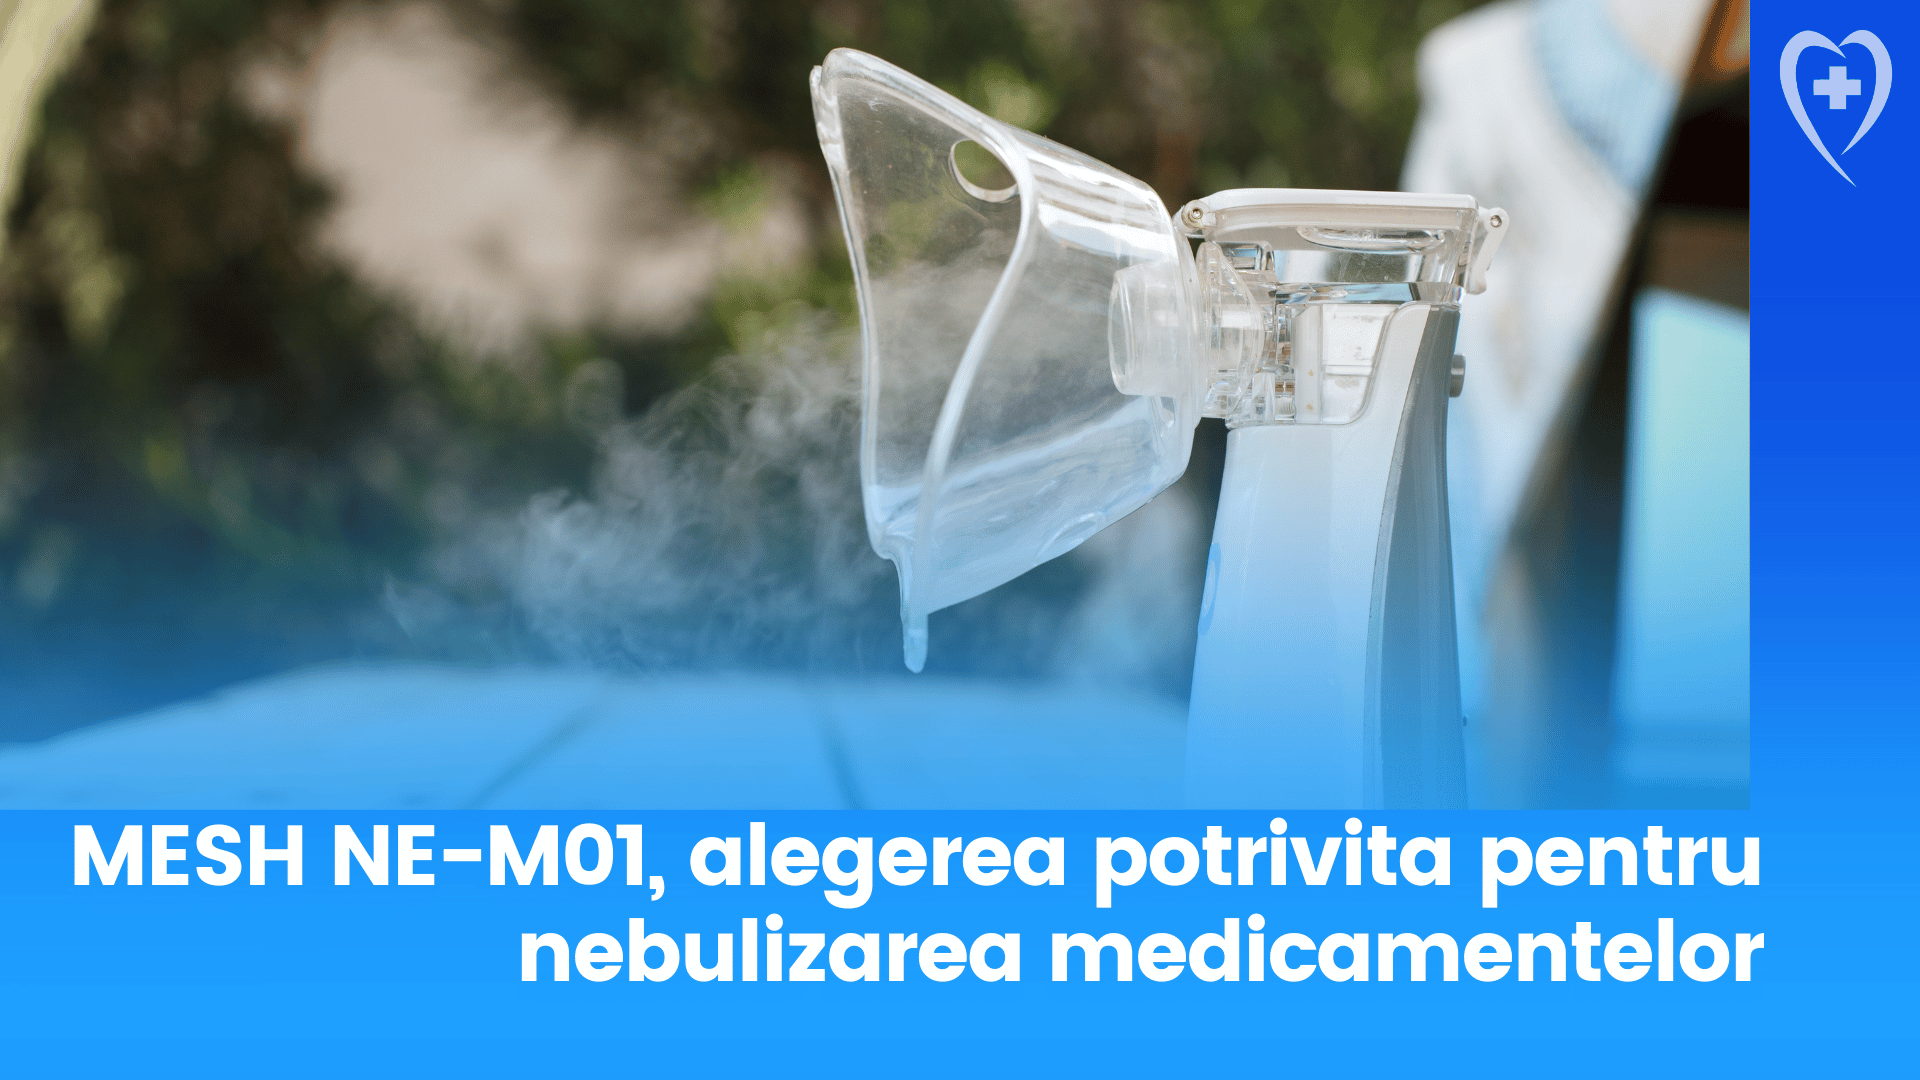 Aparatul aerosoli MESH NE-M01 - Alegerea potrivita pentru nebulizarea medicamentelor